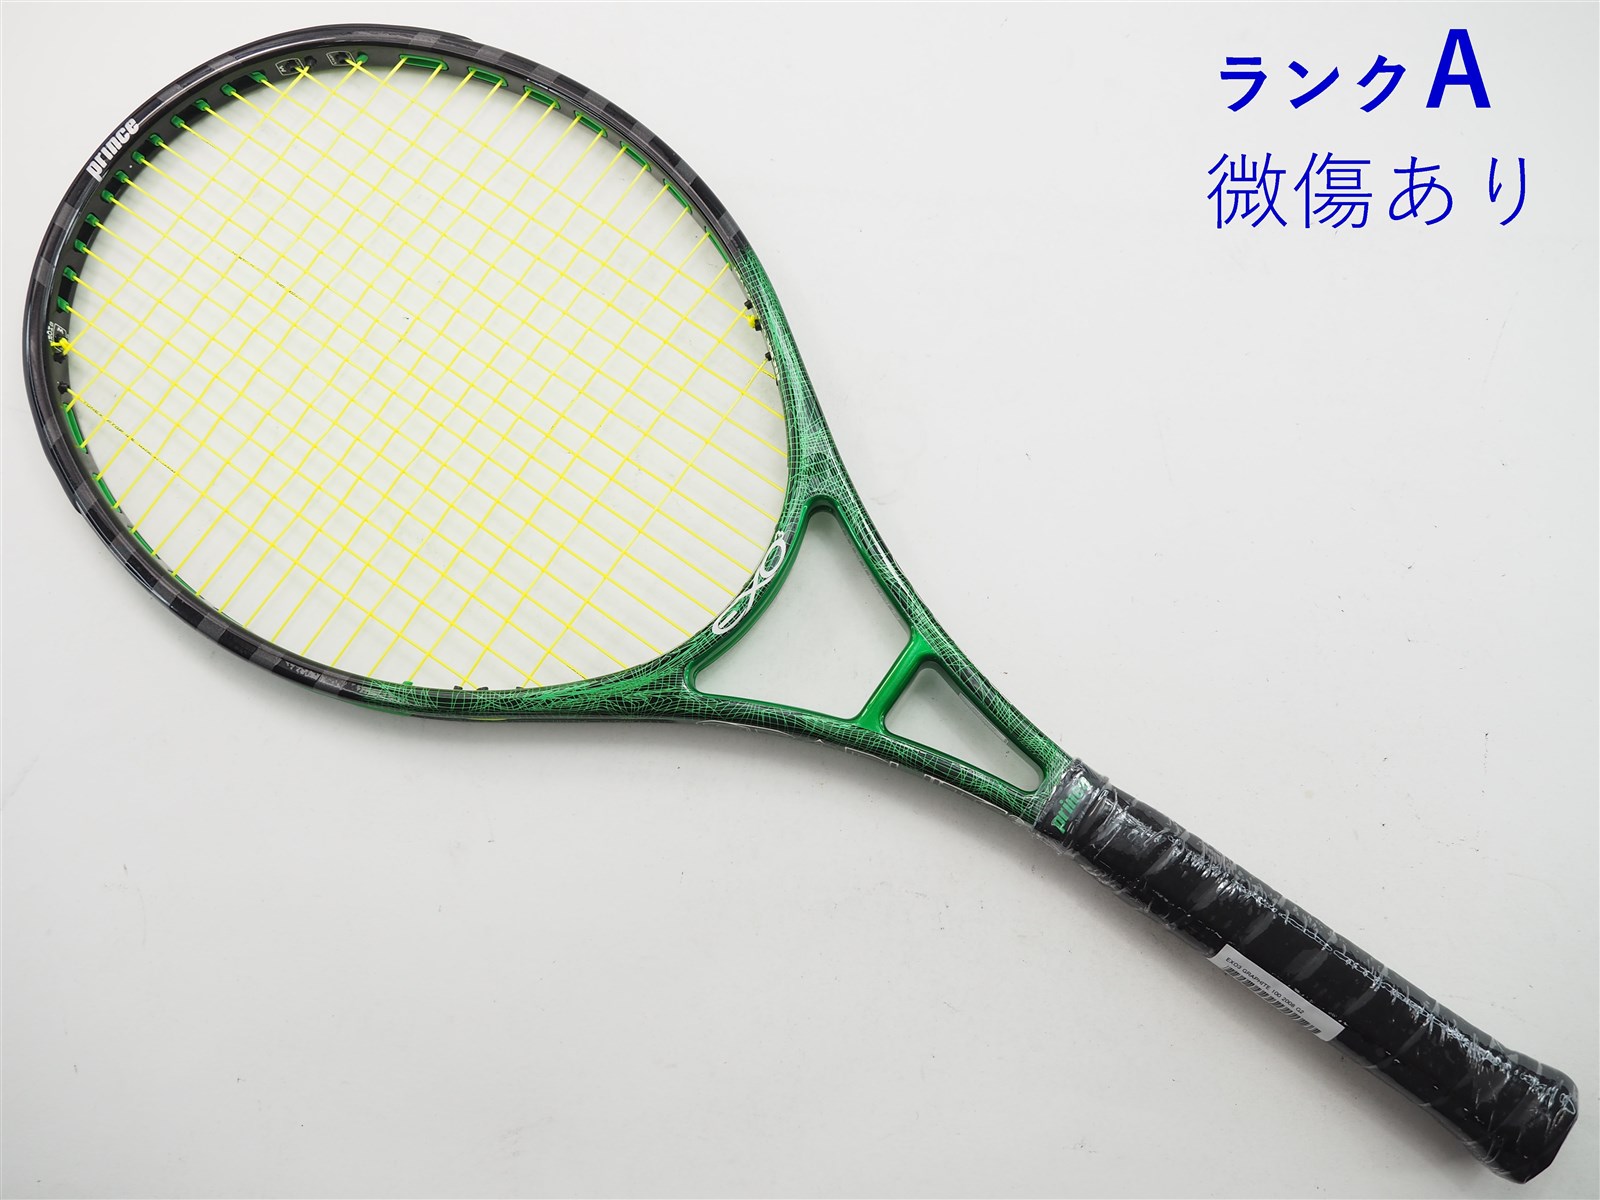 新品・未使用】【訳あり】テニスラケット プリンス ツアーグラファイト ...